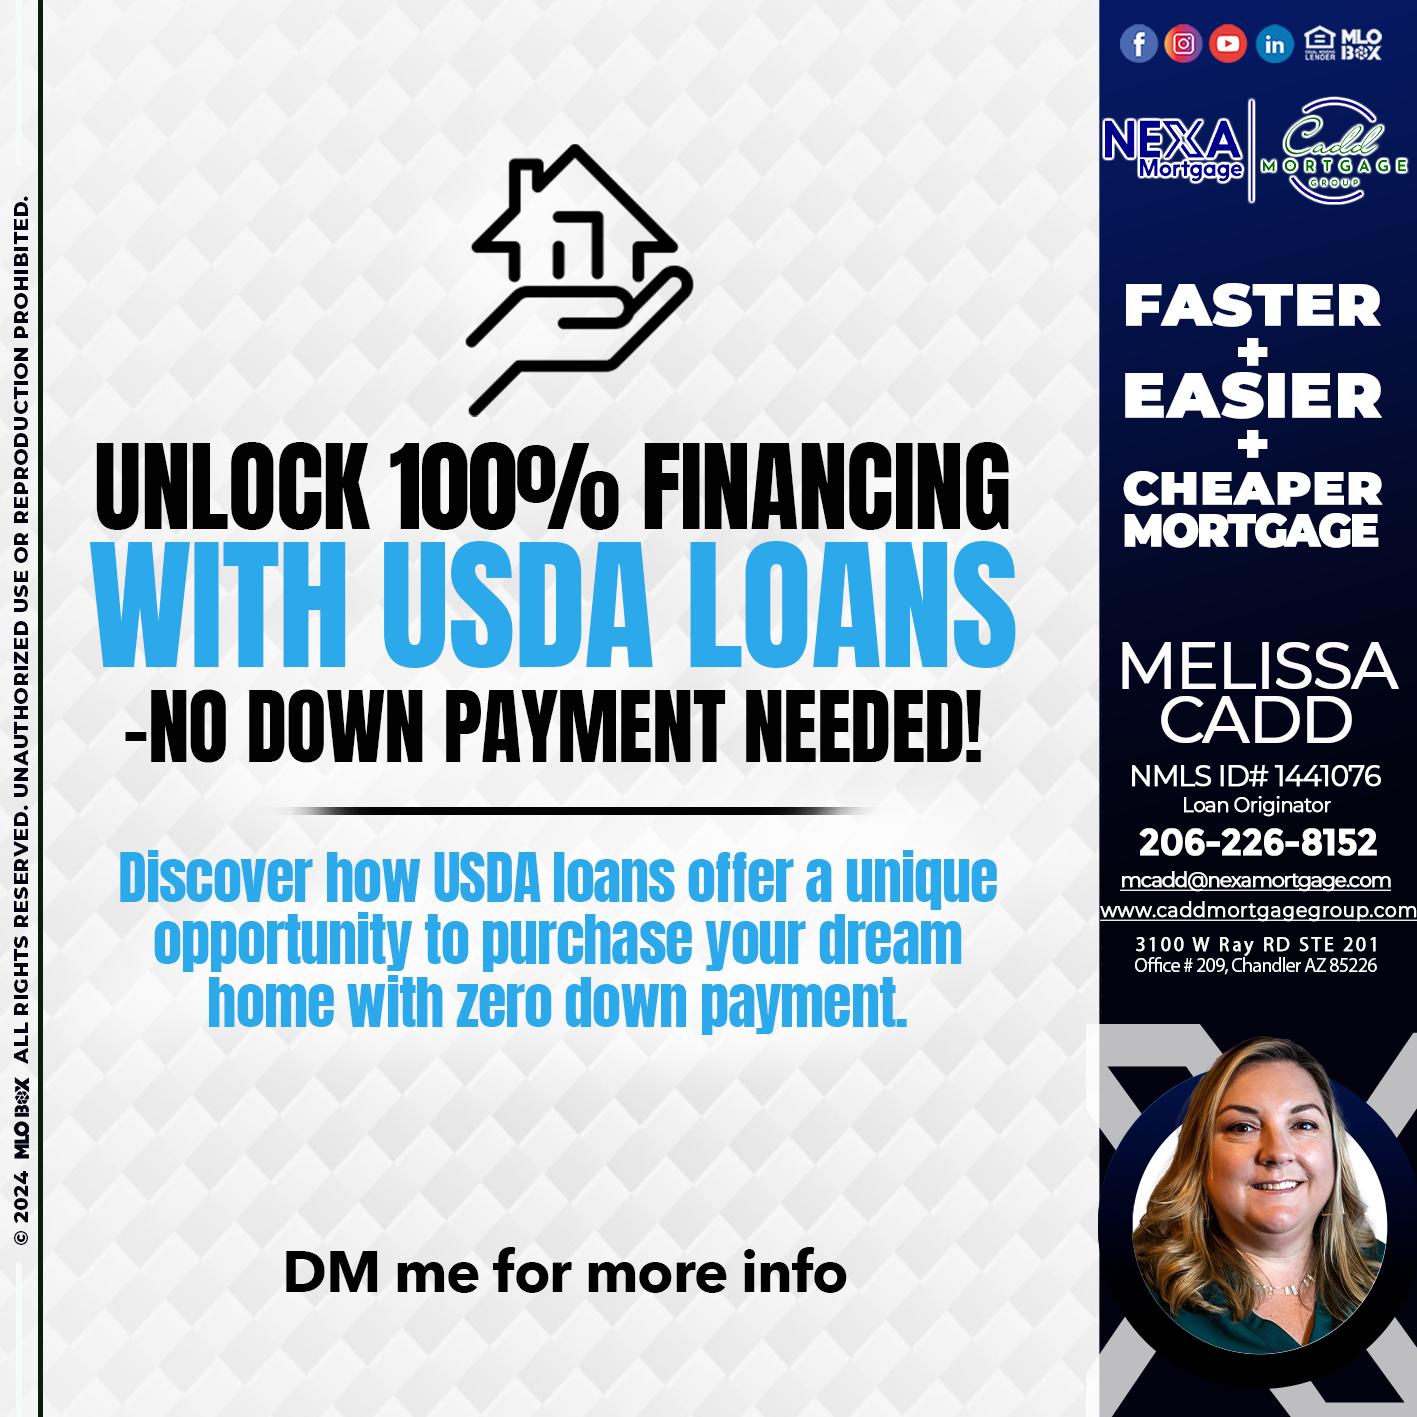 UNLOCK 100% - Melissa Cadd -Loan Originator